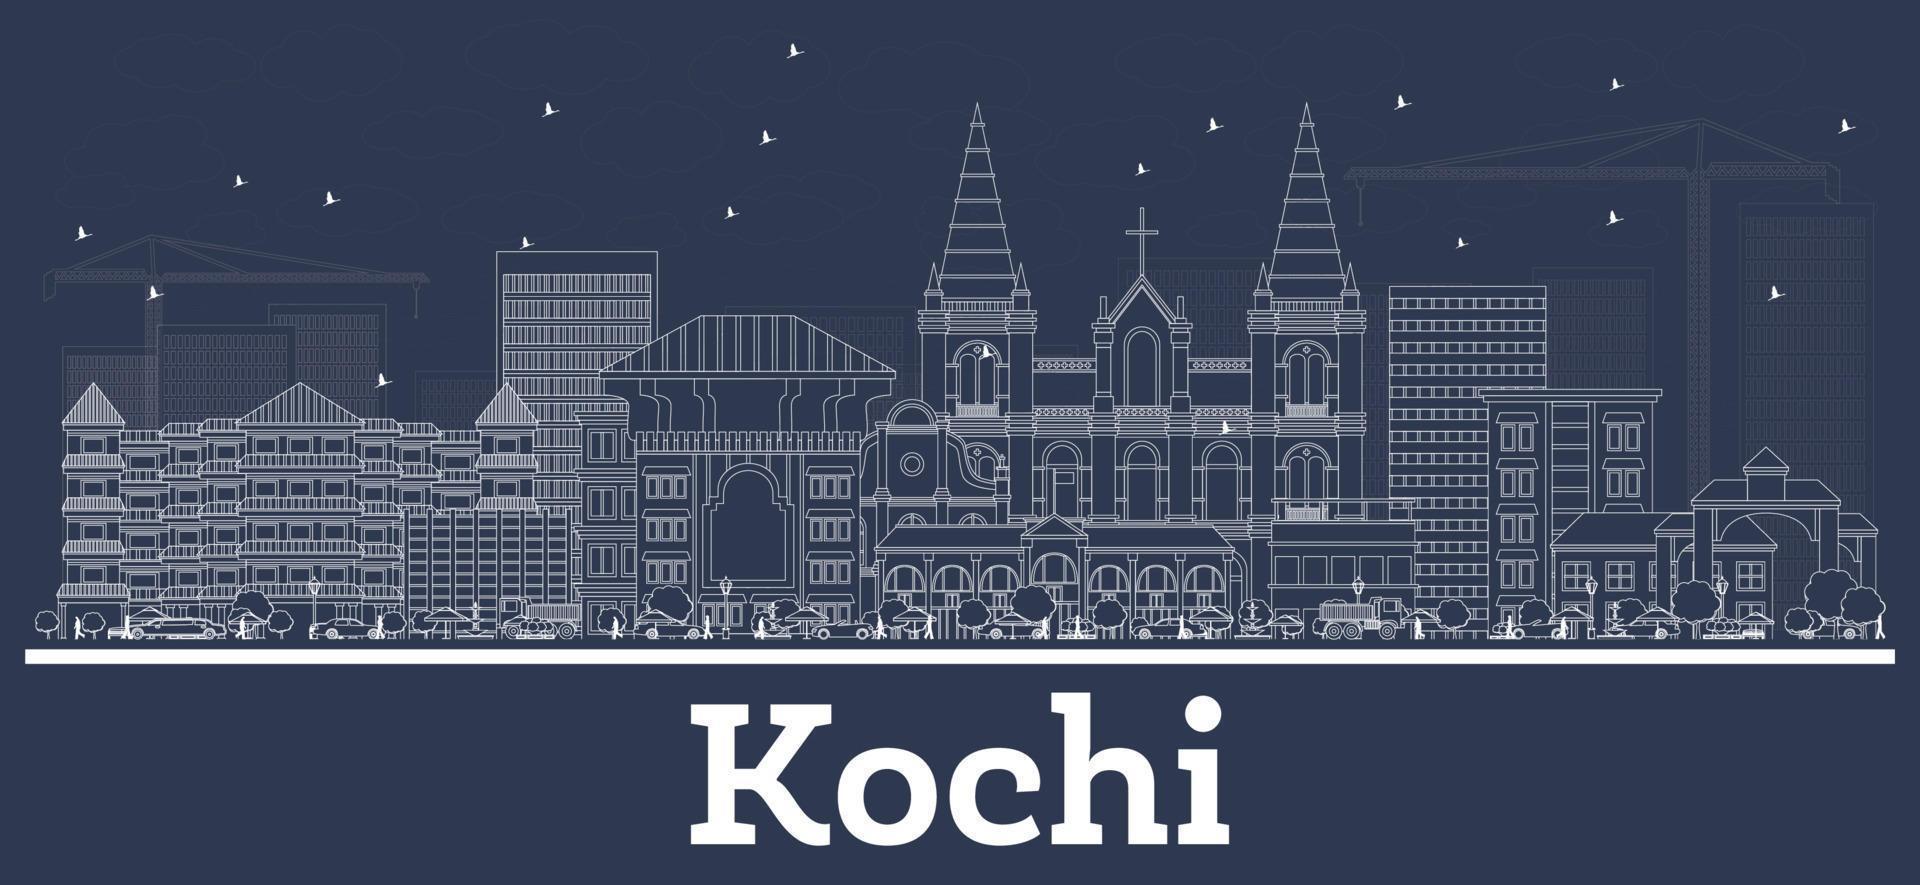 schets kochi Indië stad horizon met wit gebouwen. vector